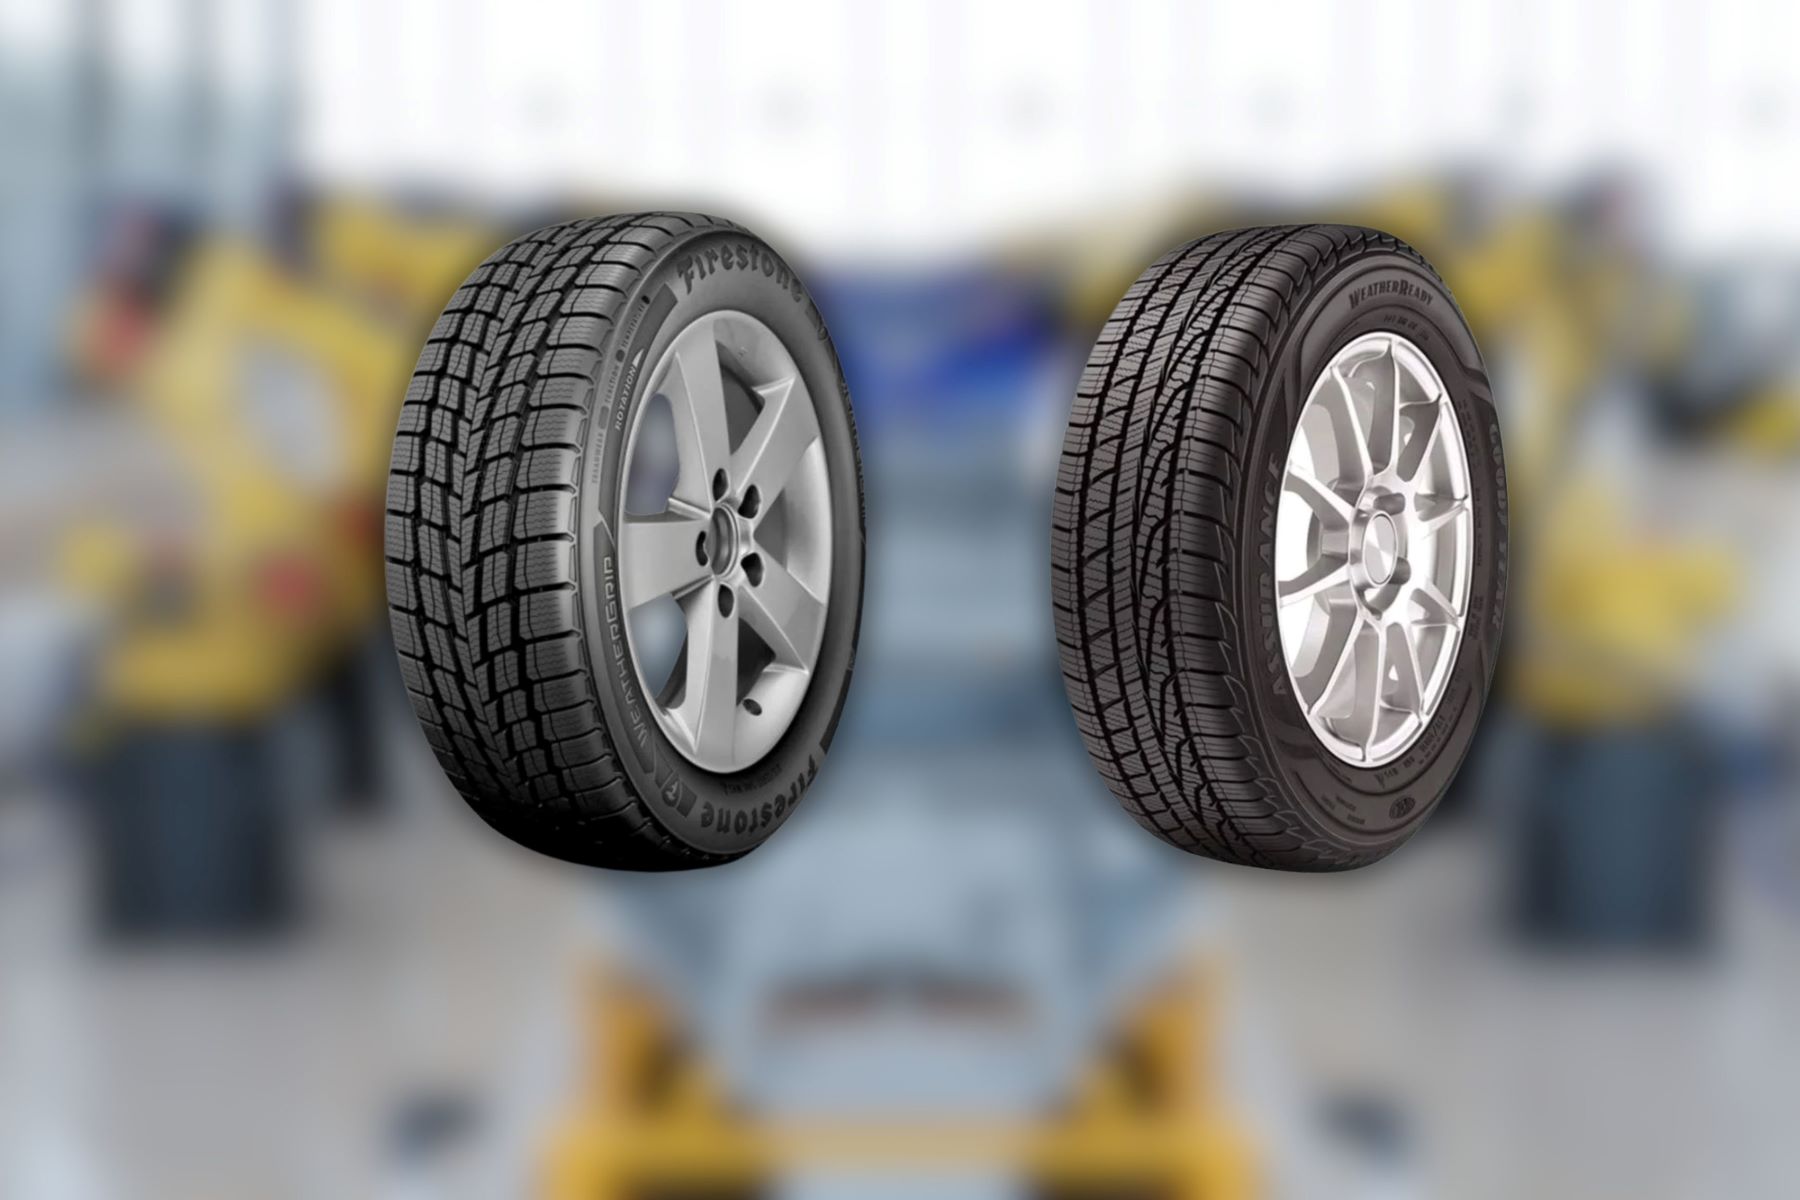 Goodyear Vs. Firestone: The Ultimate Tire Showdown!